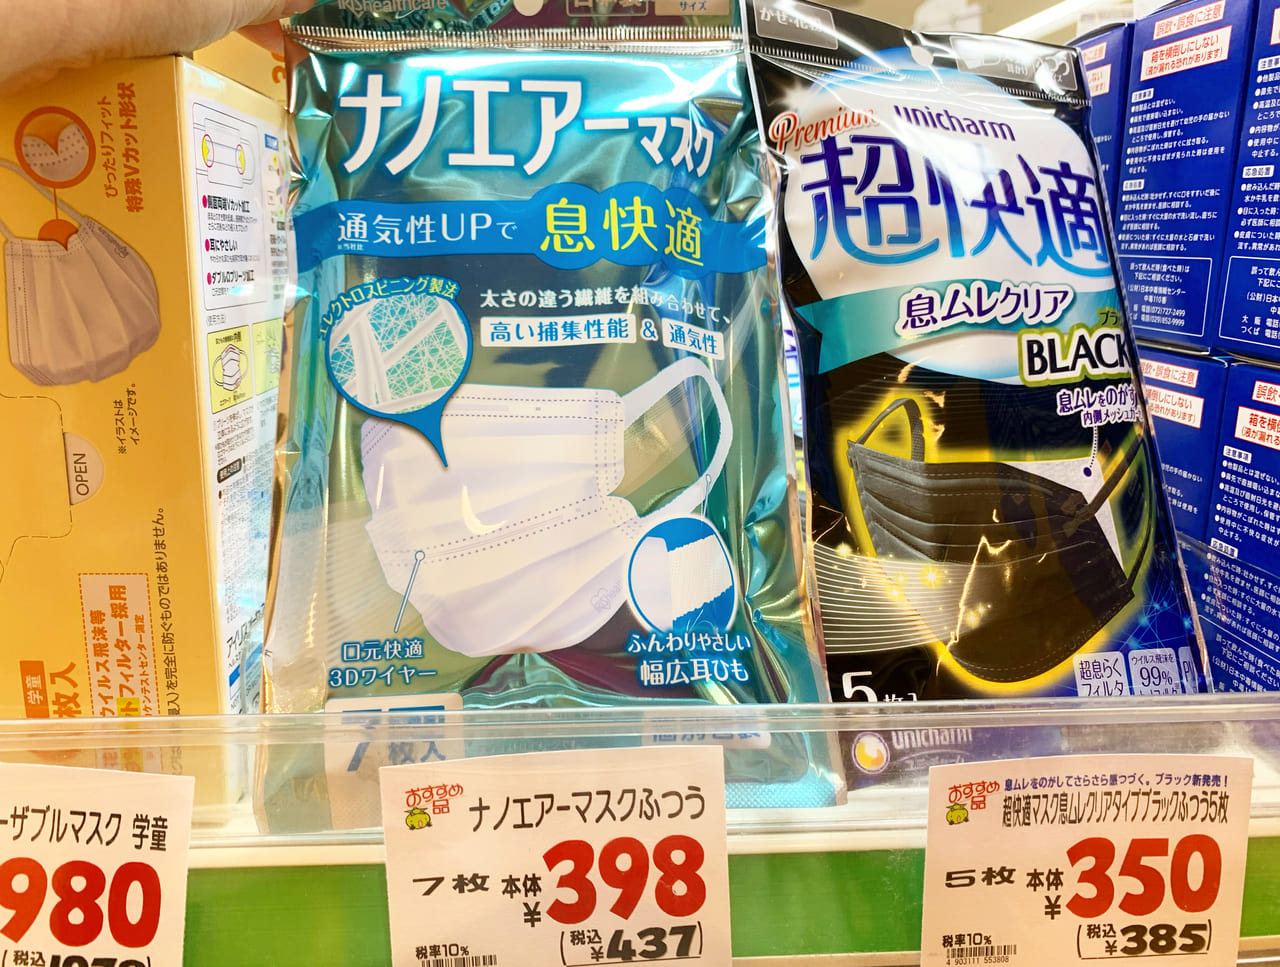 神戸市垂水区 須磨区 マツキヨのマスクが充実 プリコ垂水店で見つけた箱マスクなど 売れていたのは 号外net 神戸市垂水区 須磨区